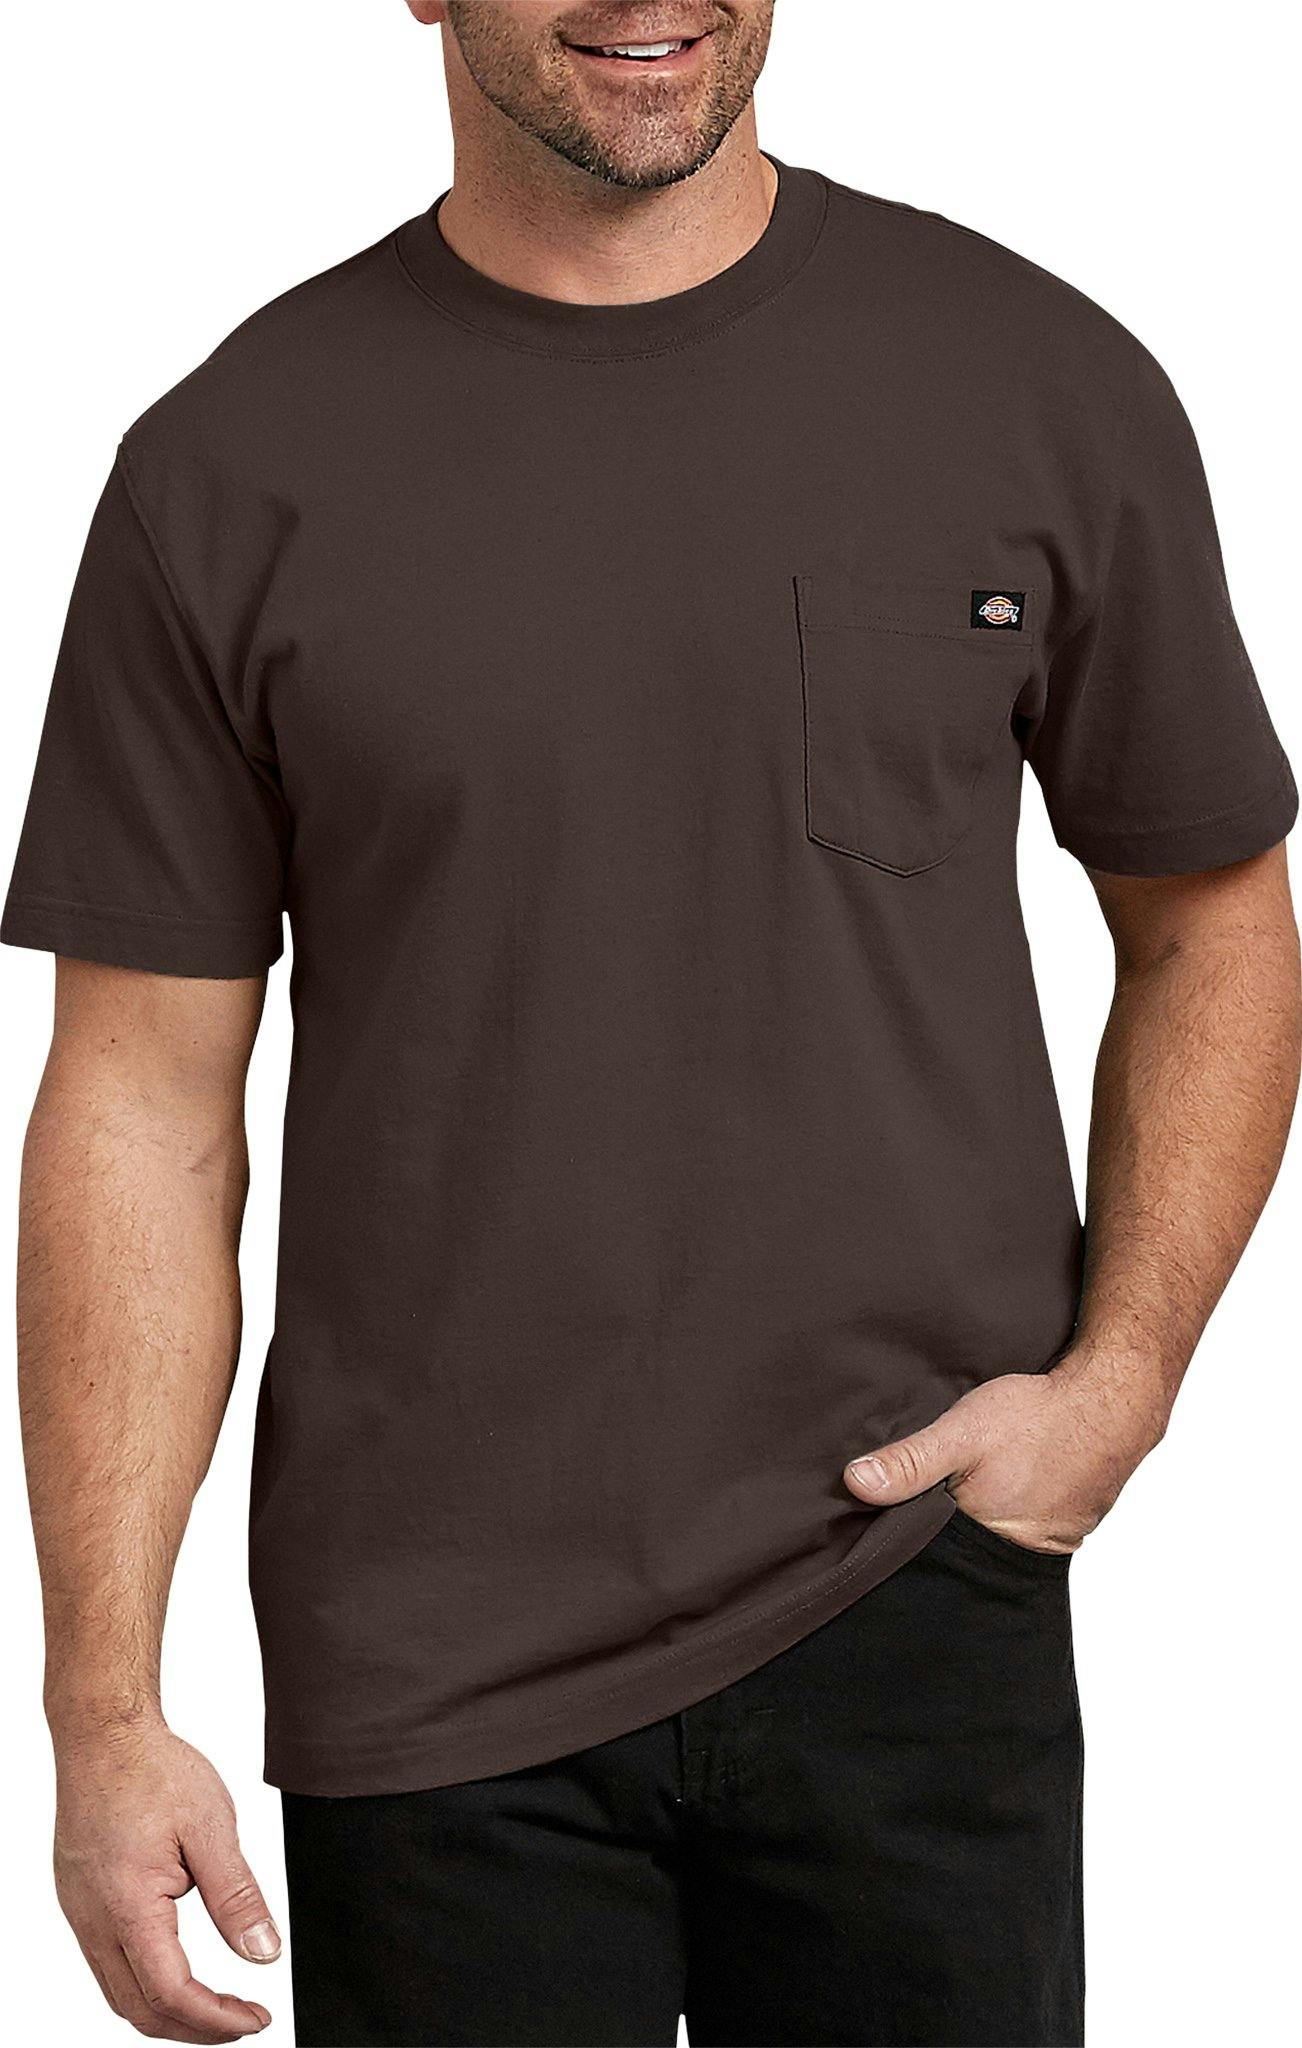 Image de produit pour T-shirt épais et col rond - Homme